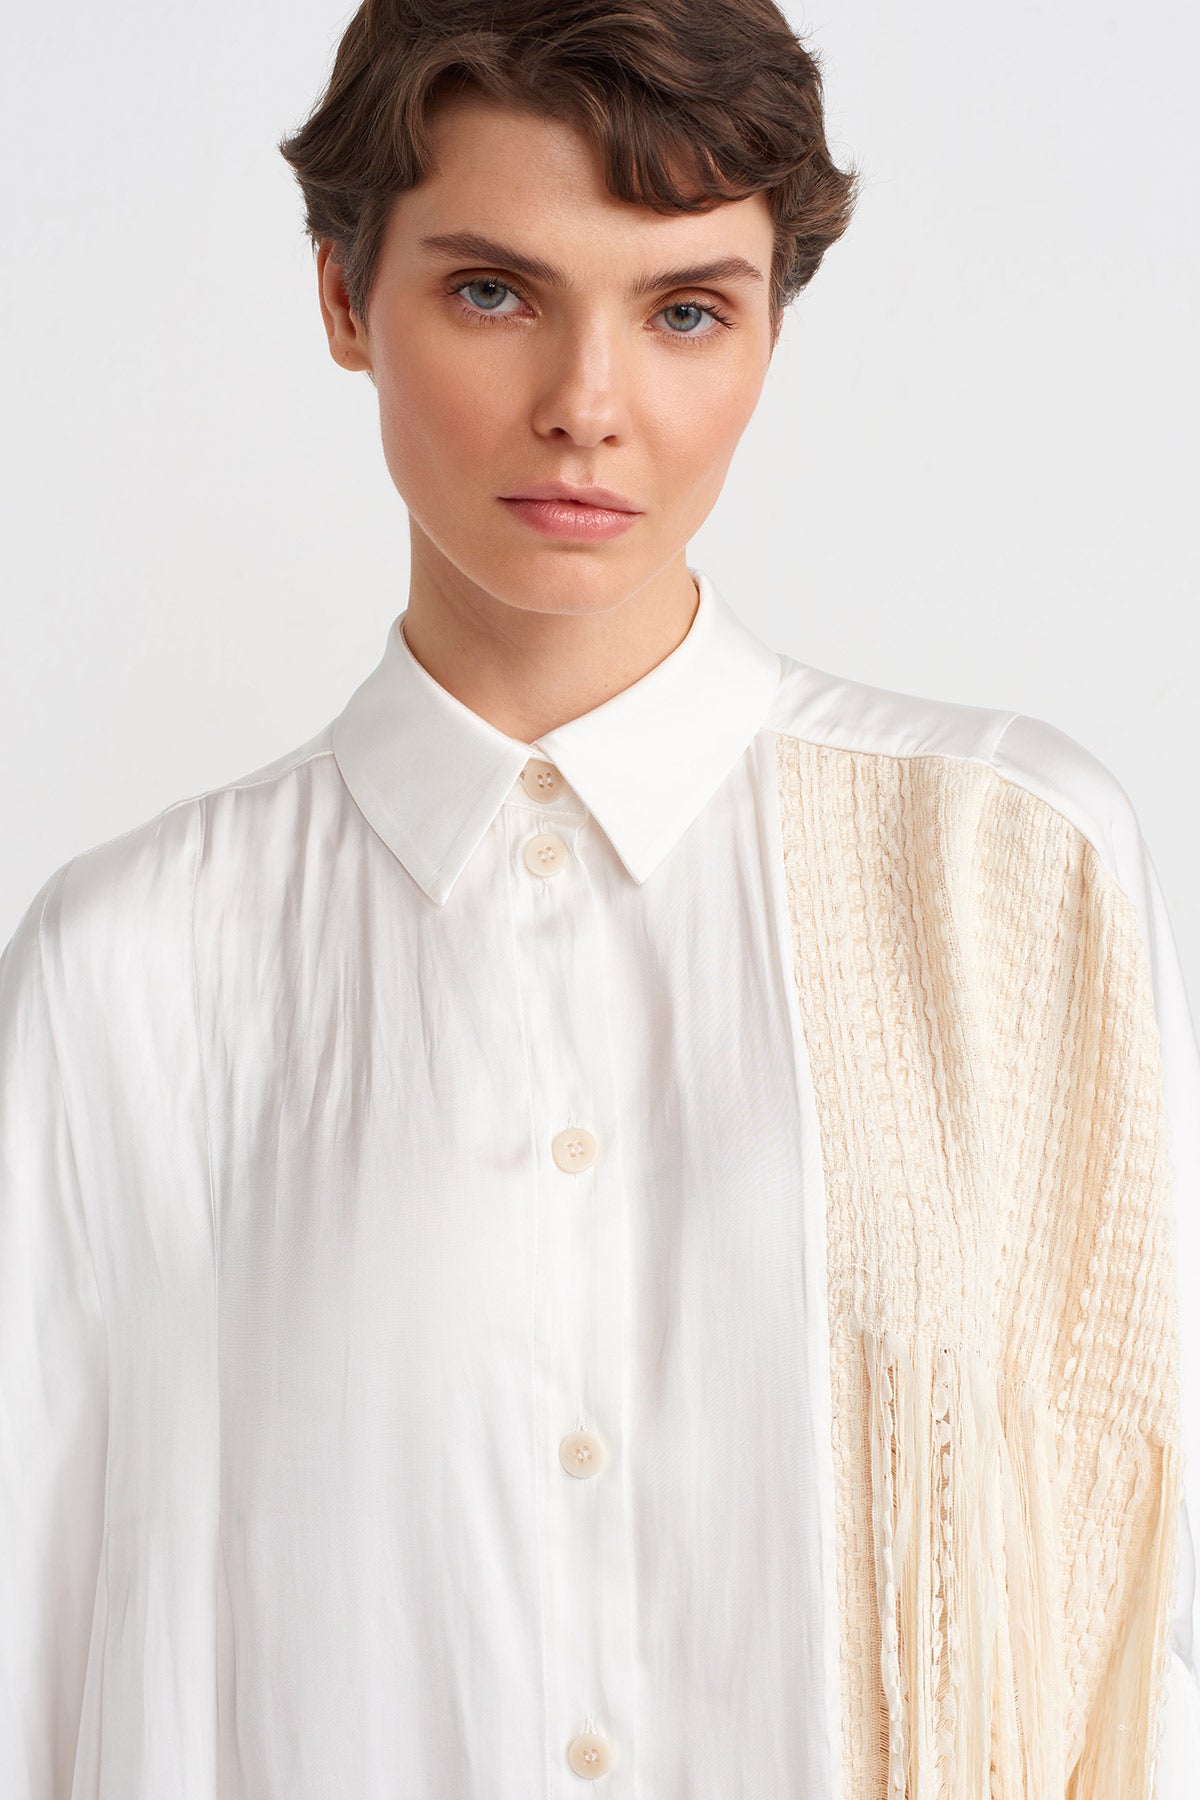 Kırık Beyaz / Natur Püskül Detaylı Gömlek Elbise-Y244014060